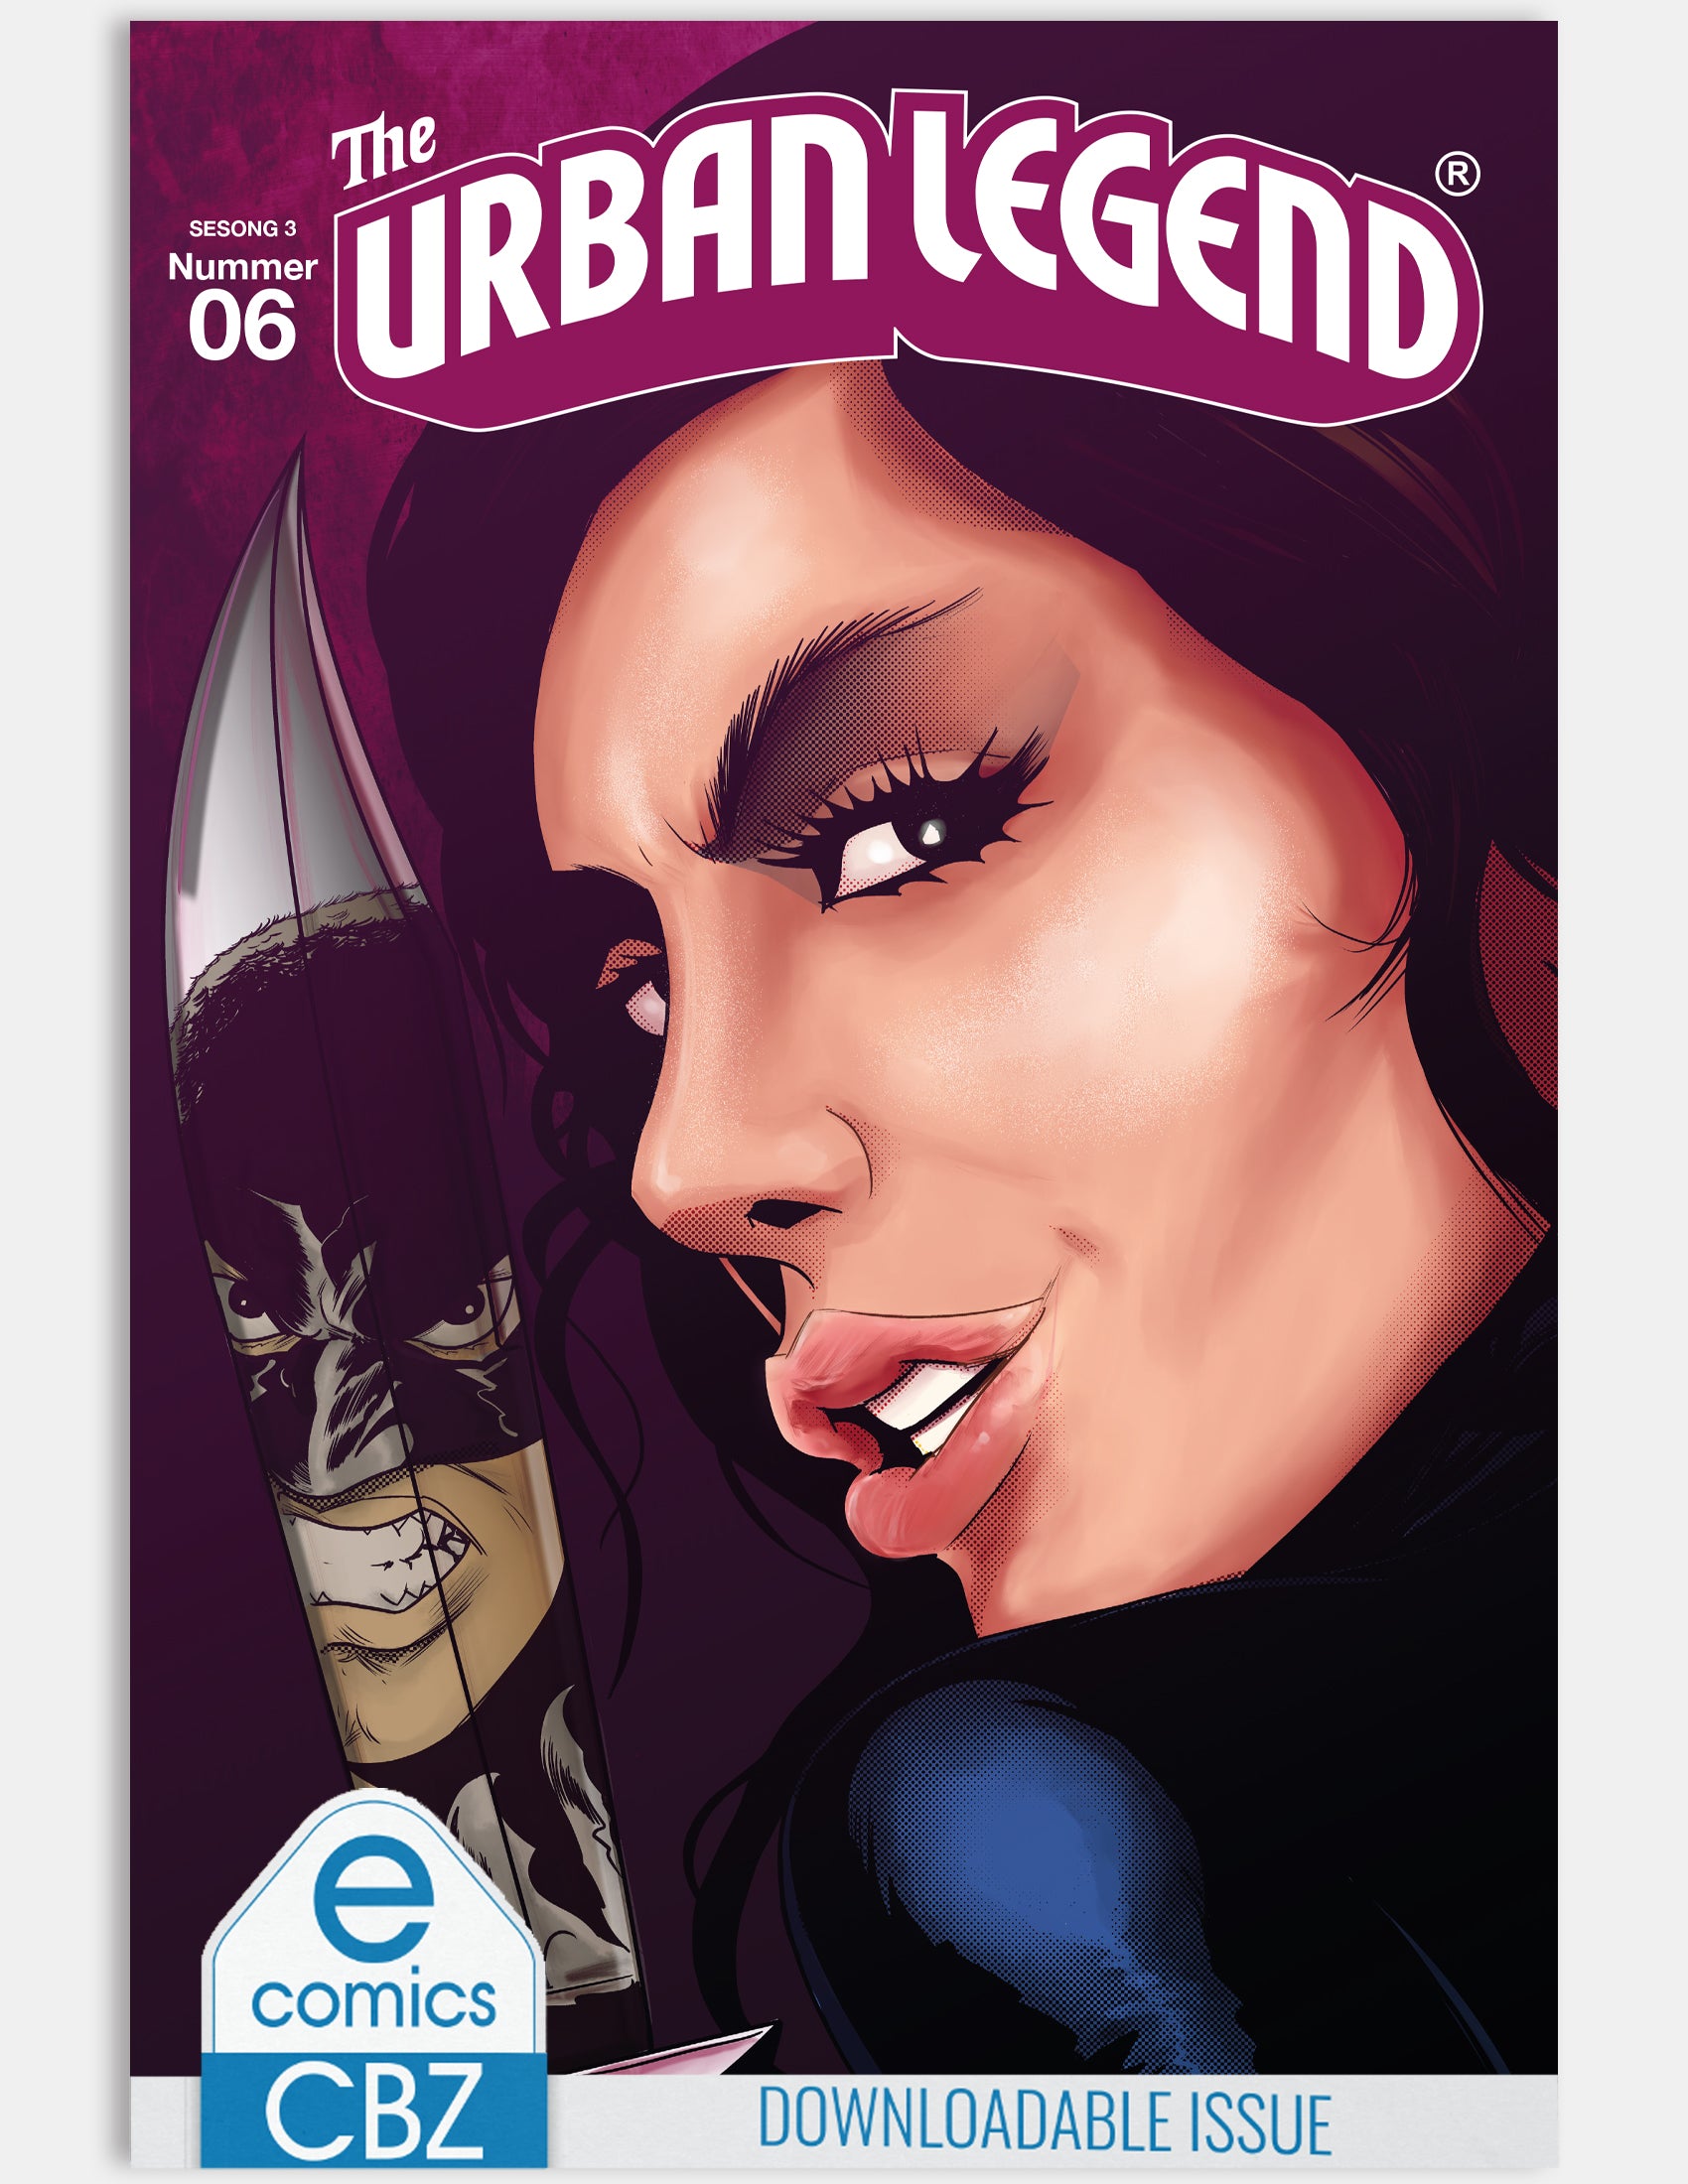 The Urban Legend - Rage (Issue 6 - Season 3) - Digital Issue